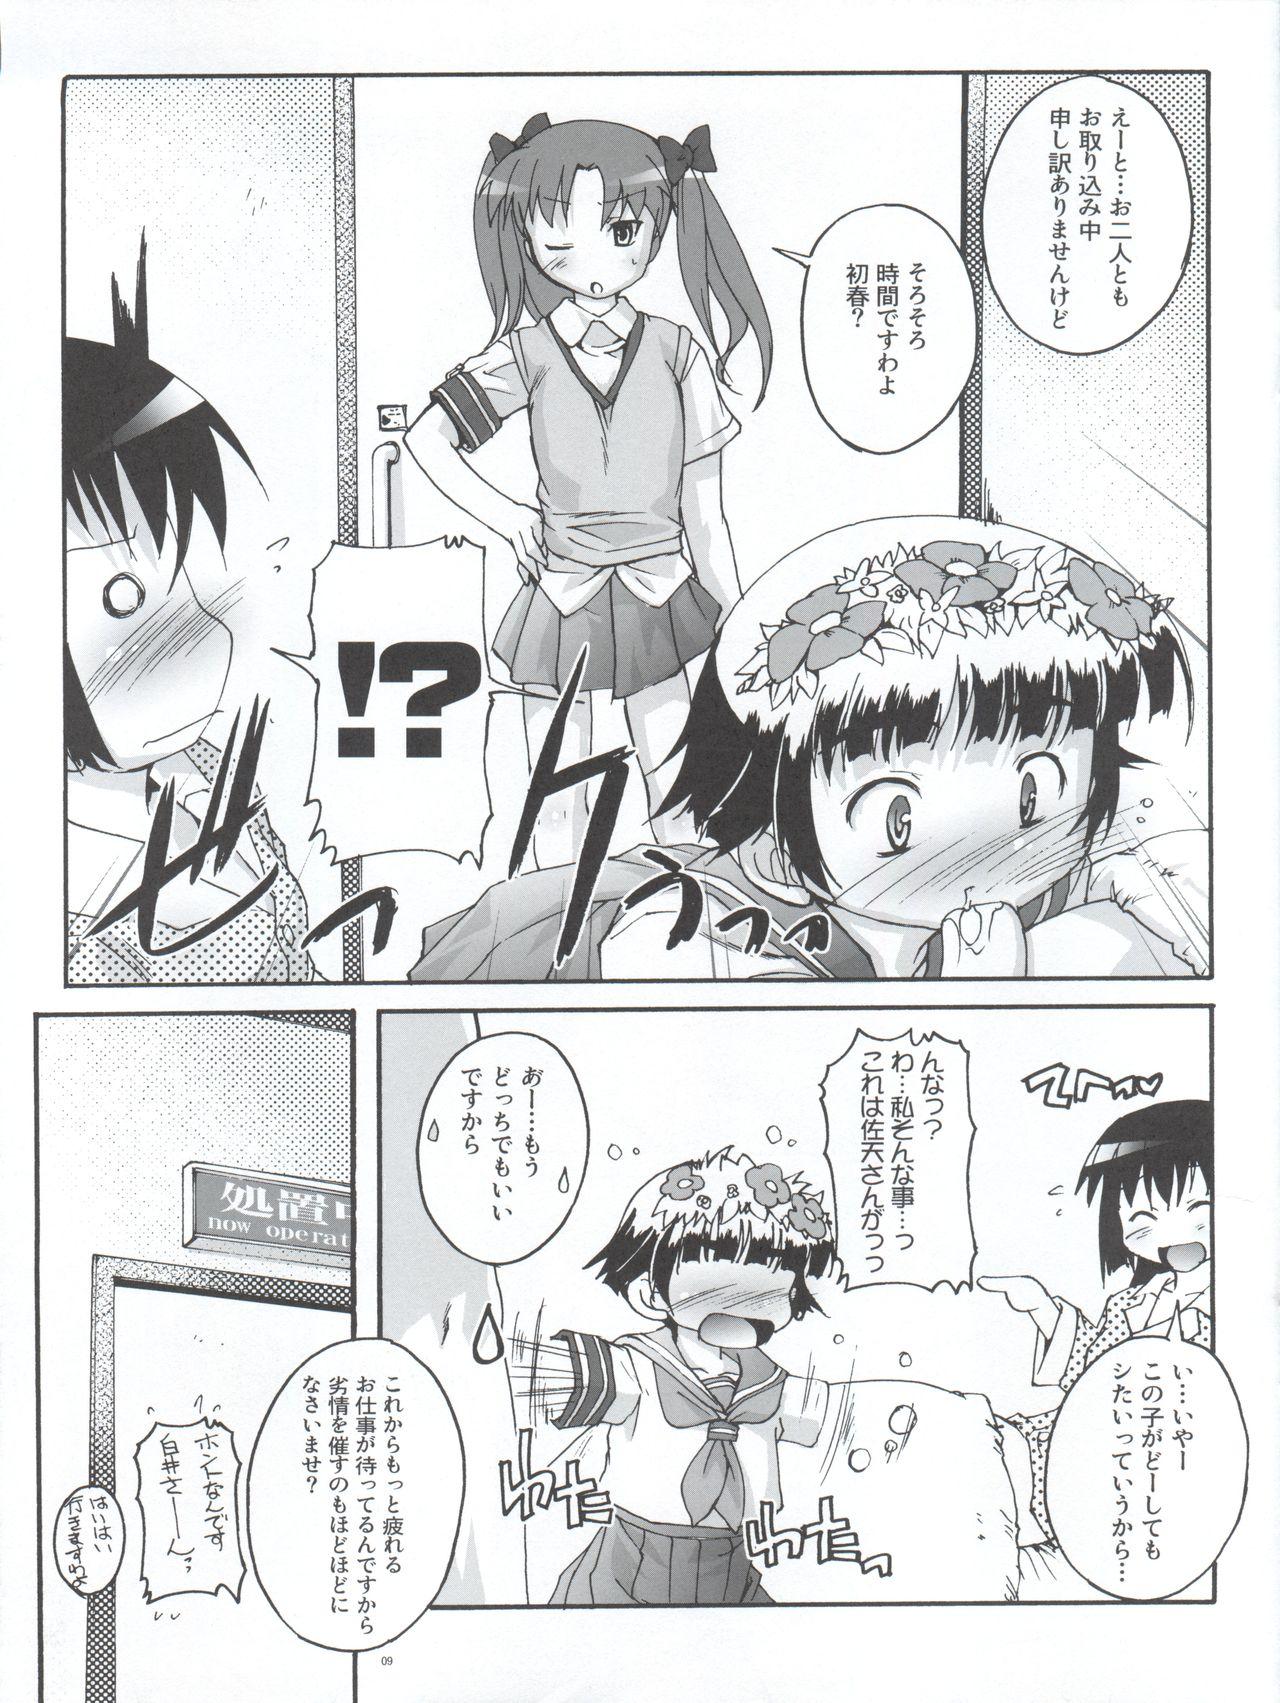 Female Domination Kanzen Nenshou 18 Judgment no Oshigoto desu no! - Toaru kagaku no railgun Milfporn - Page 9